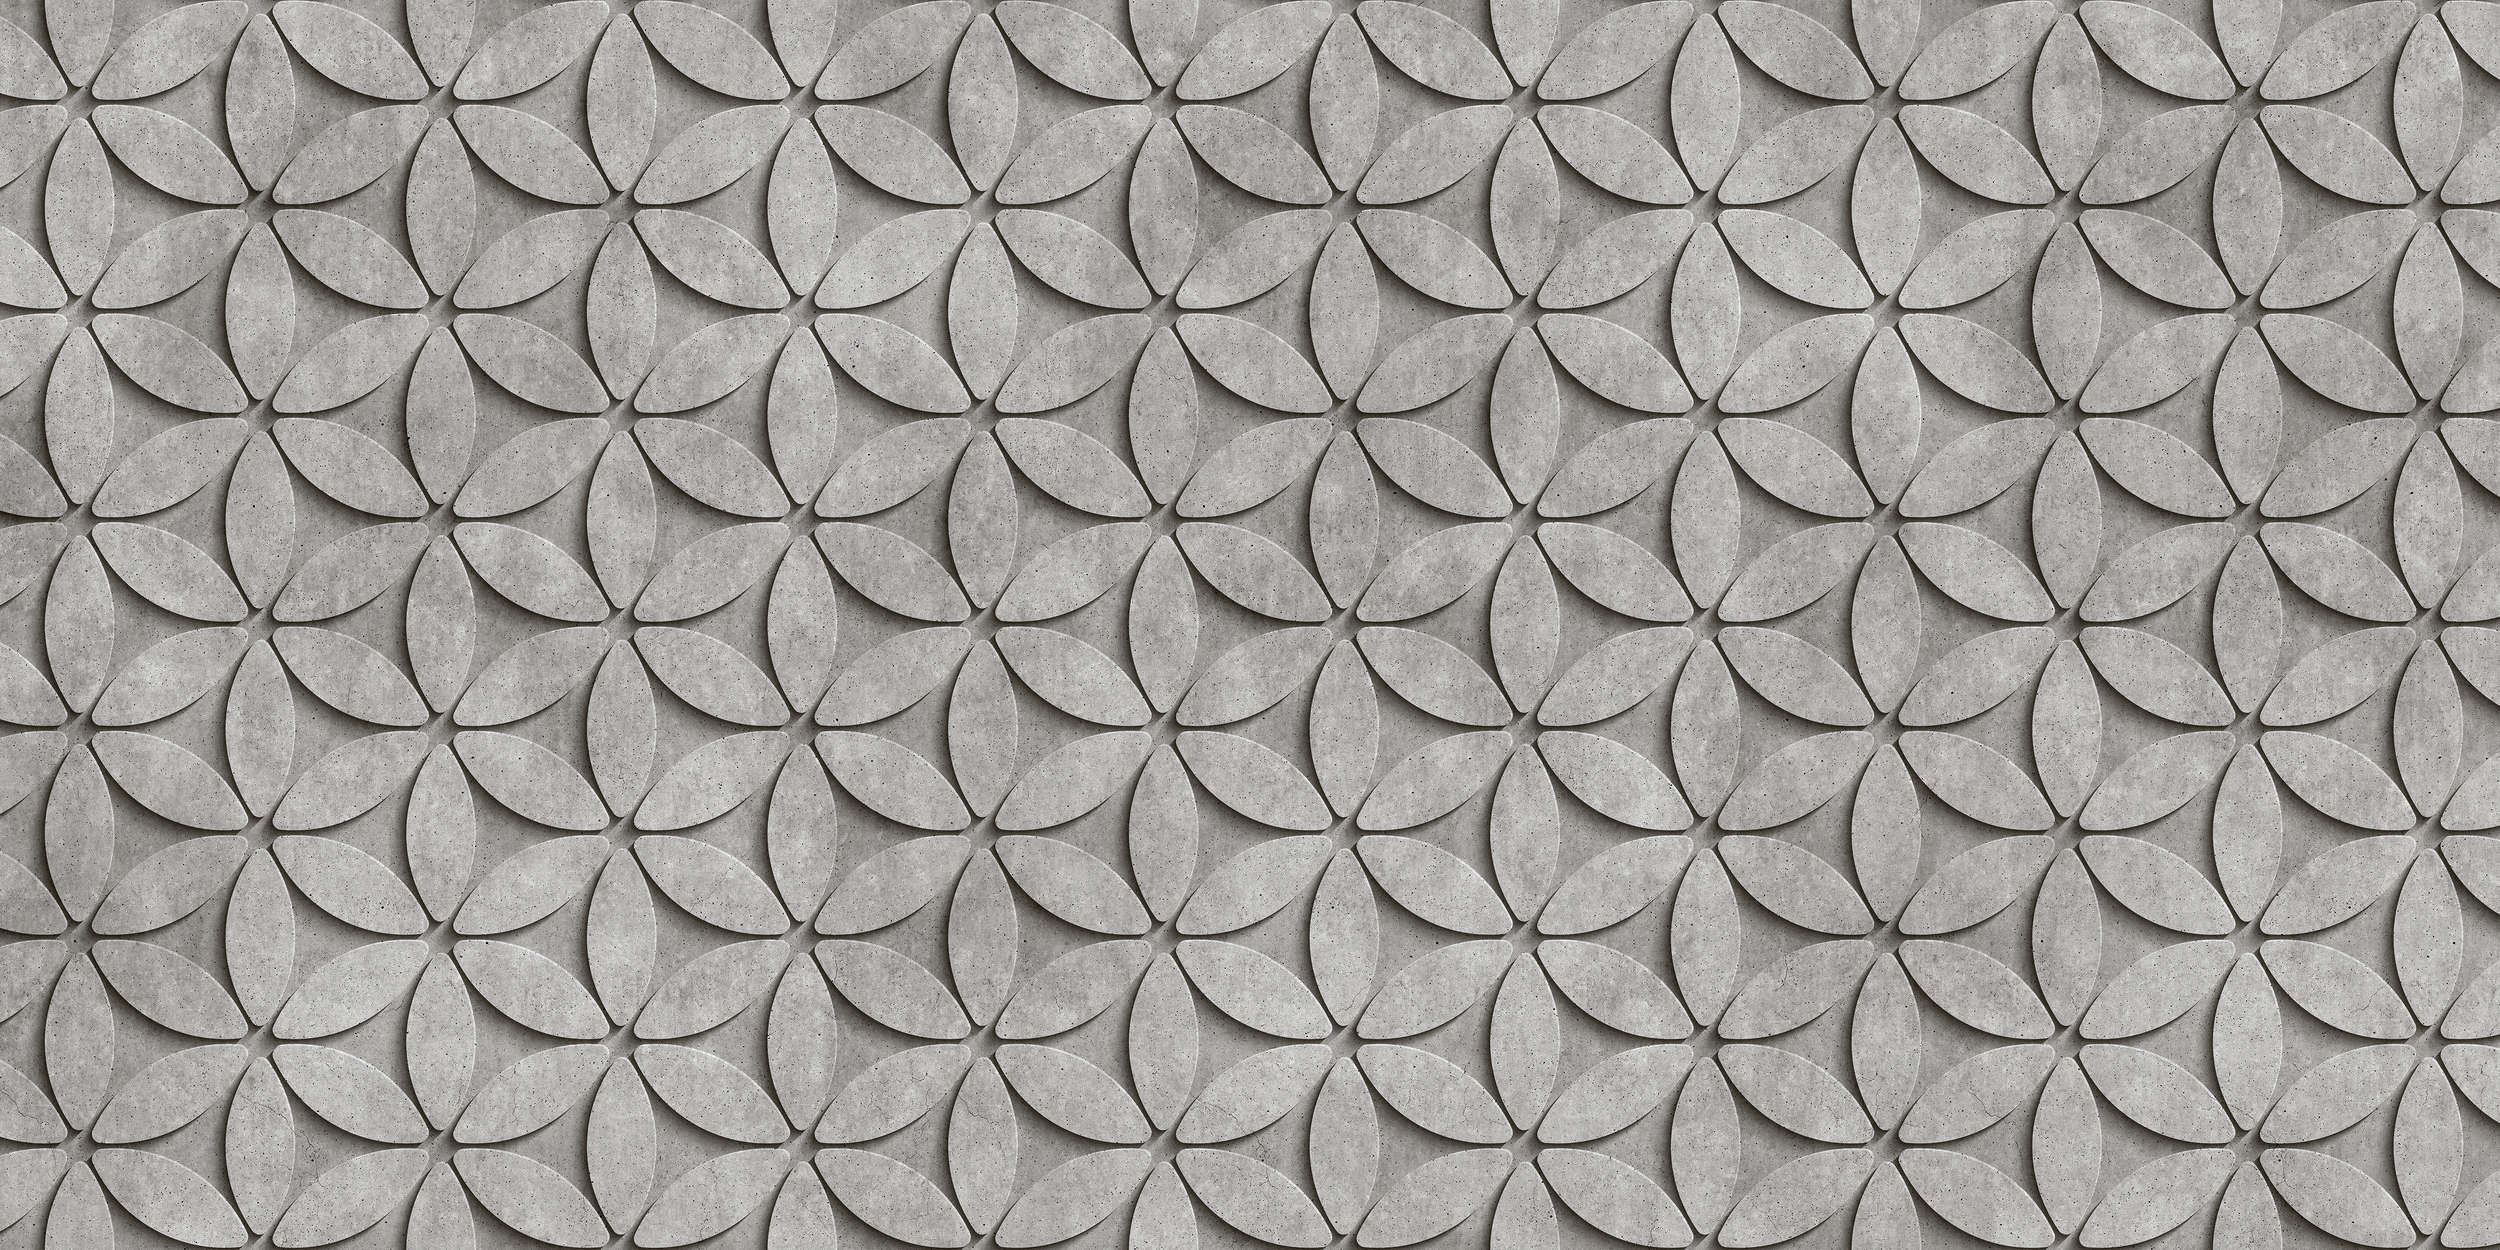             Tile 1 - Papier peint en polygone de béton 3D cool - gris, noir | Intissé lisse mat
        